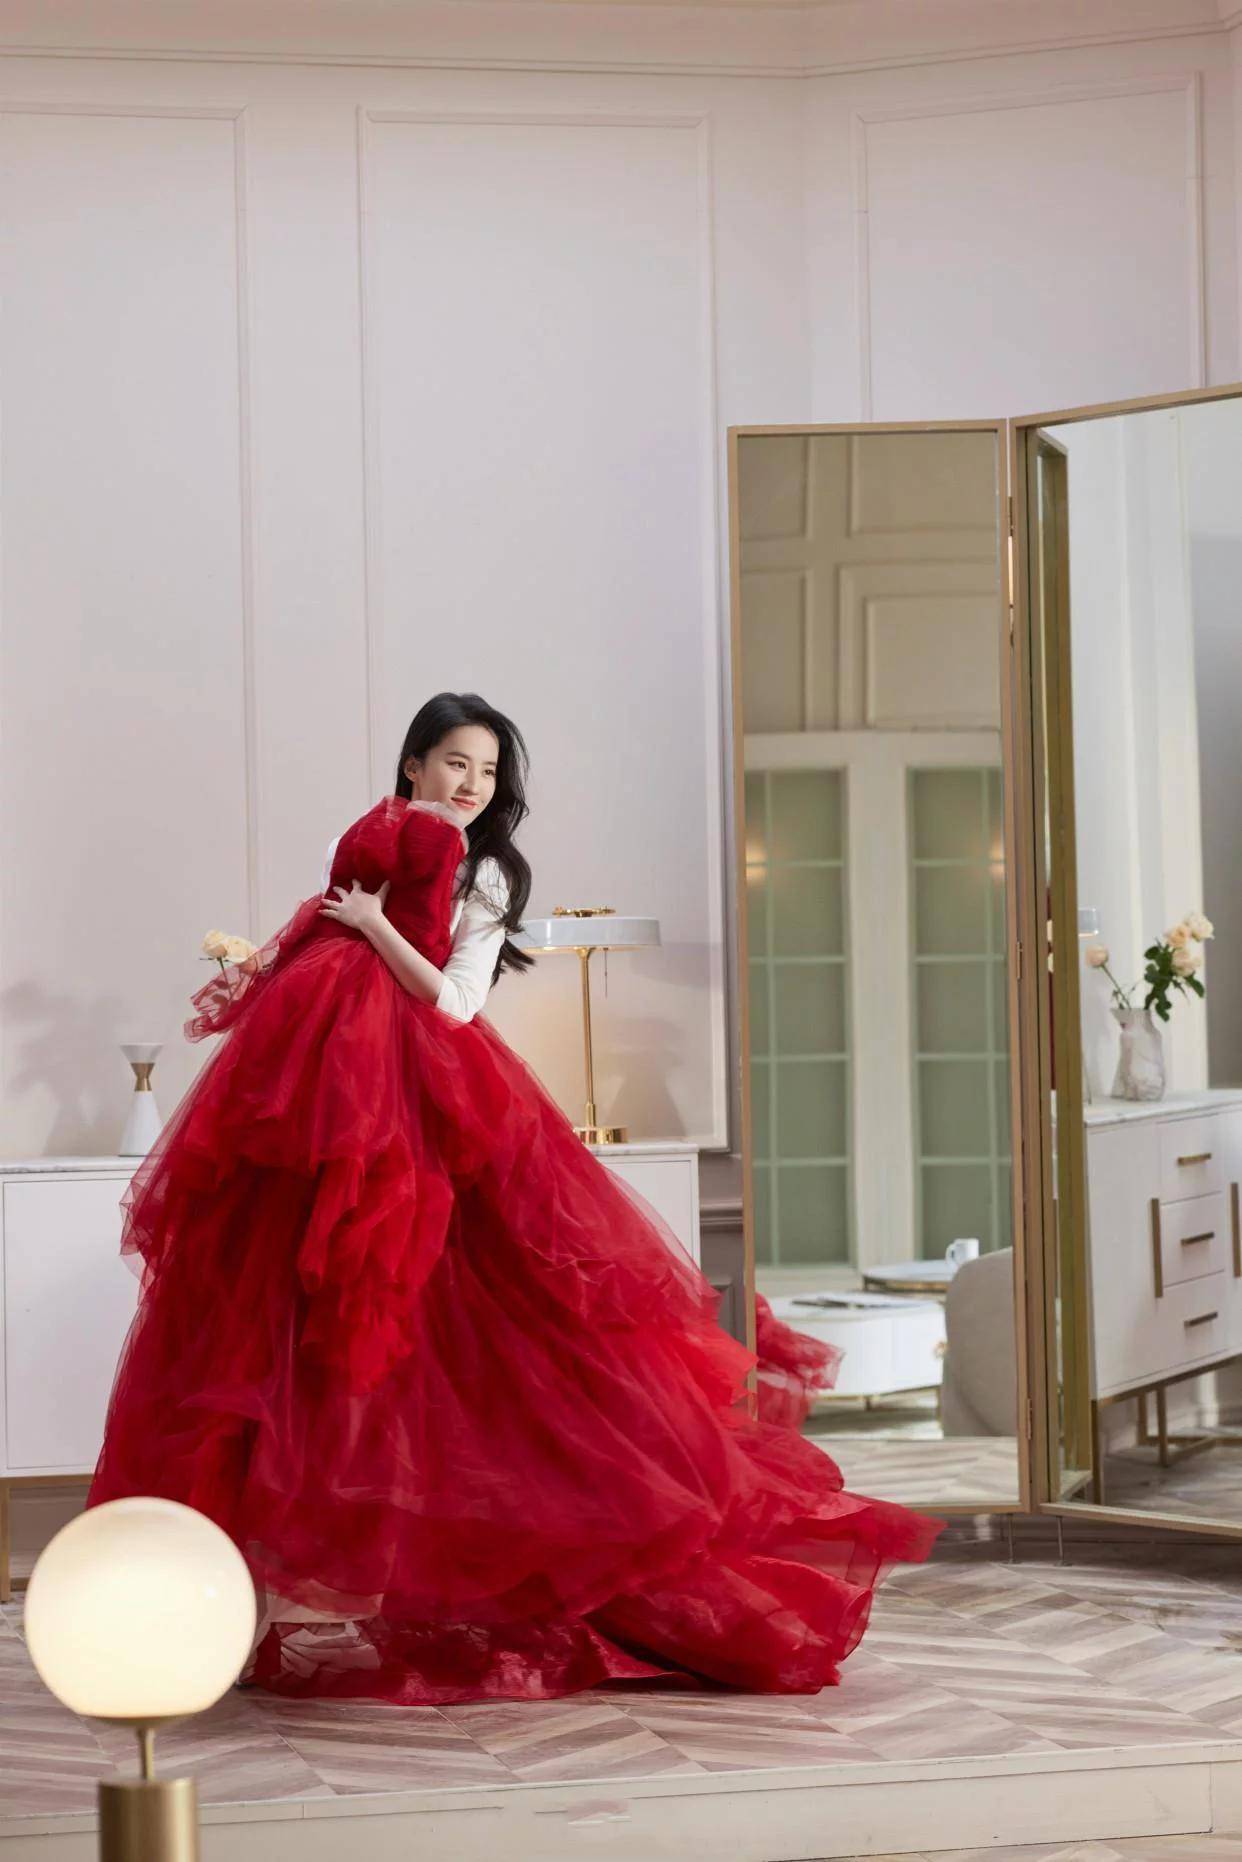 刘亦菲的新造型太成熟艳红色抹胸礼服穿搭尽显女人味十足